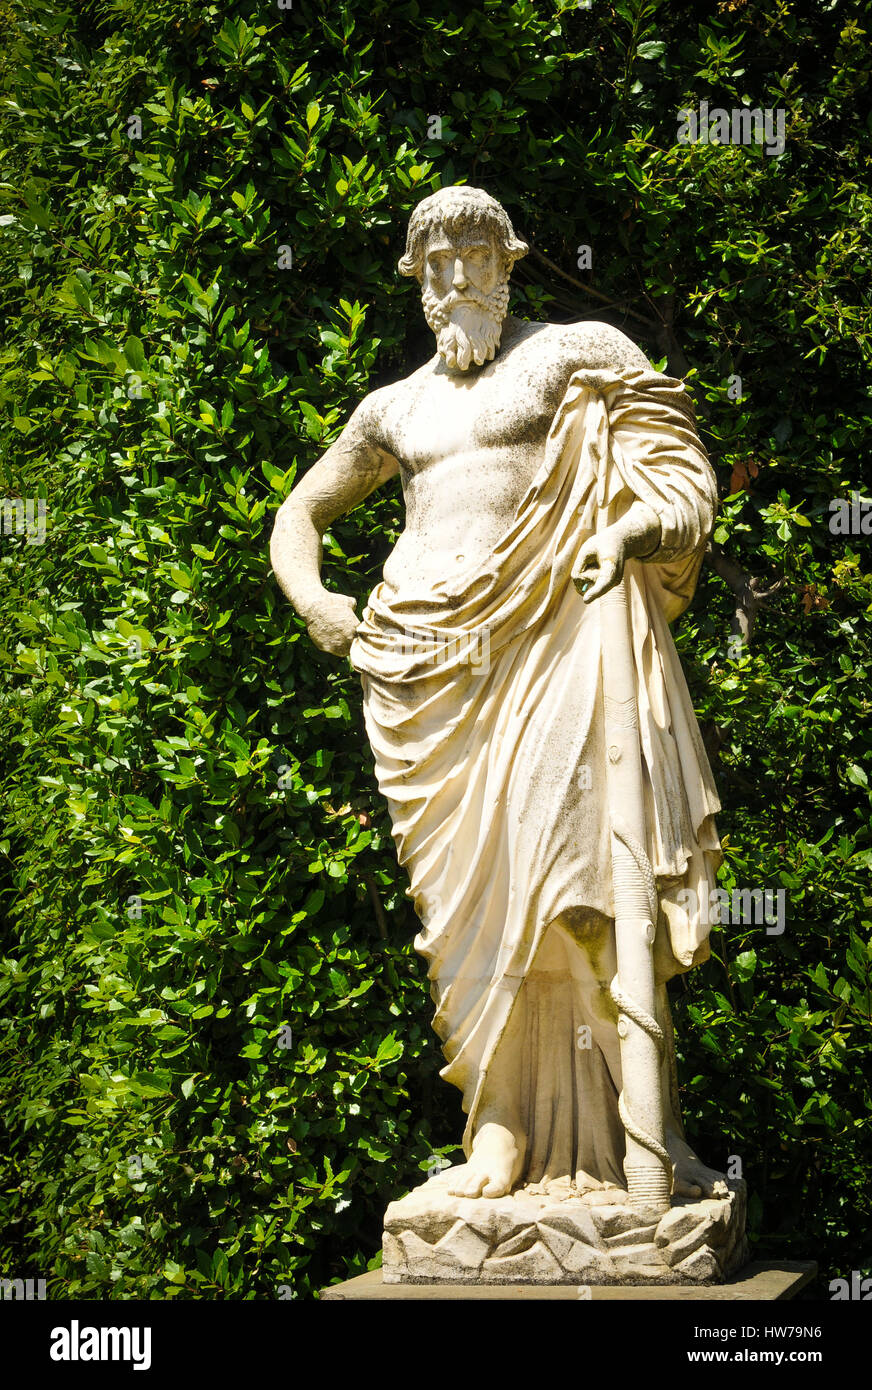 Dettagli architettonici della vecchia statua in Firenze, Italia Foto Stock